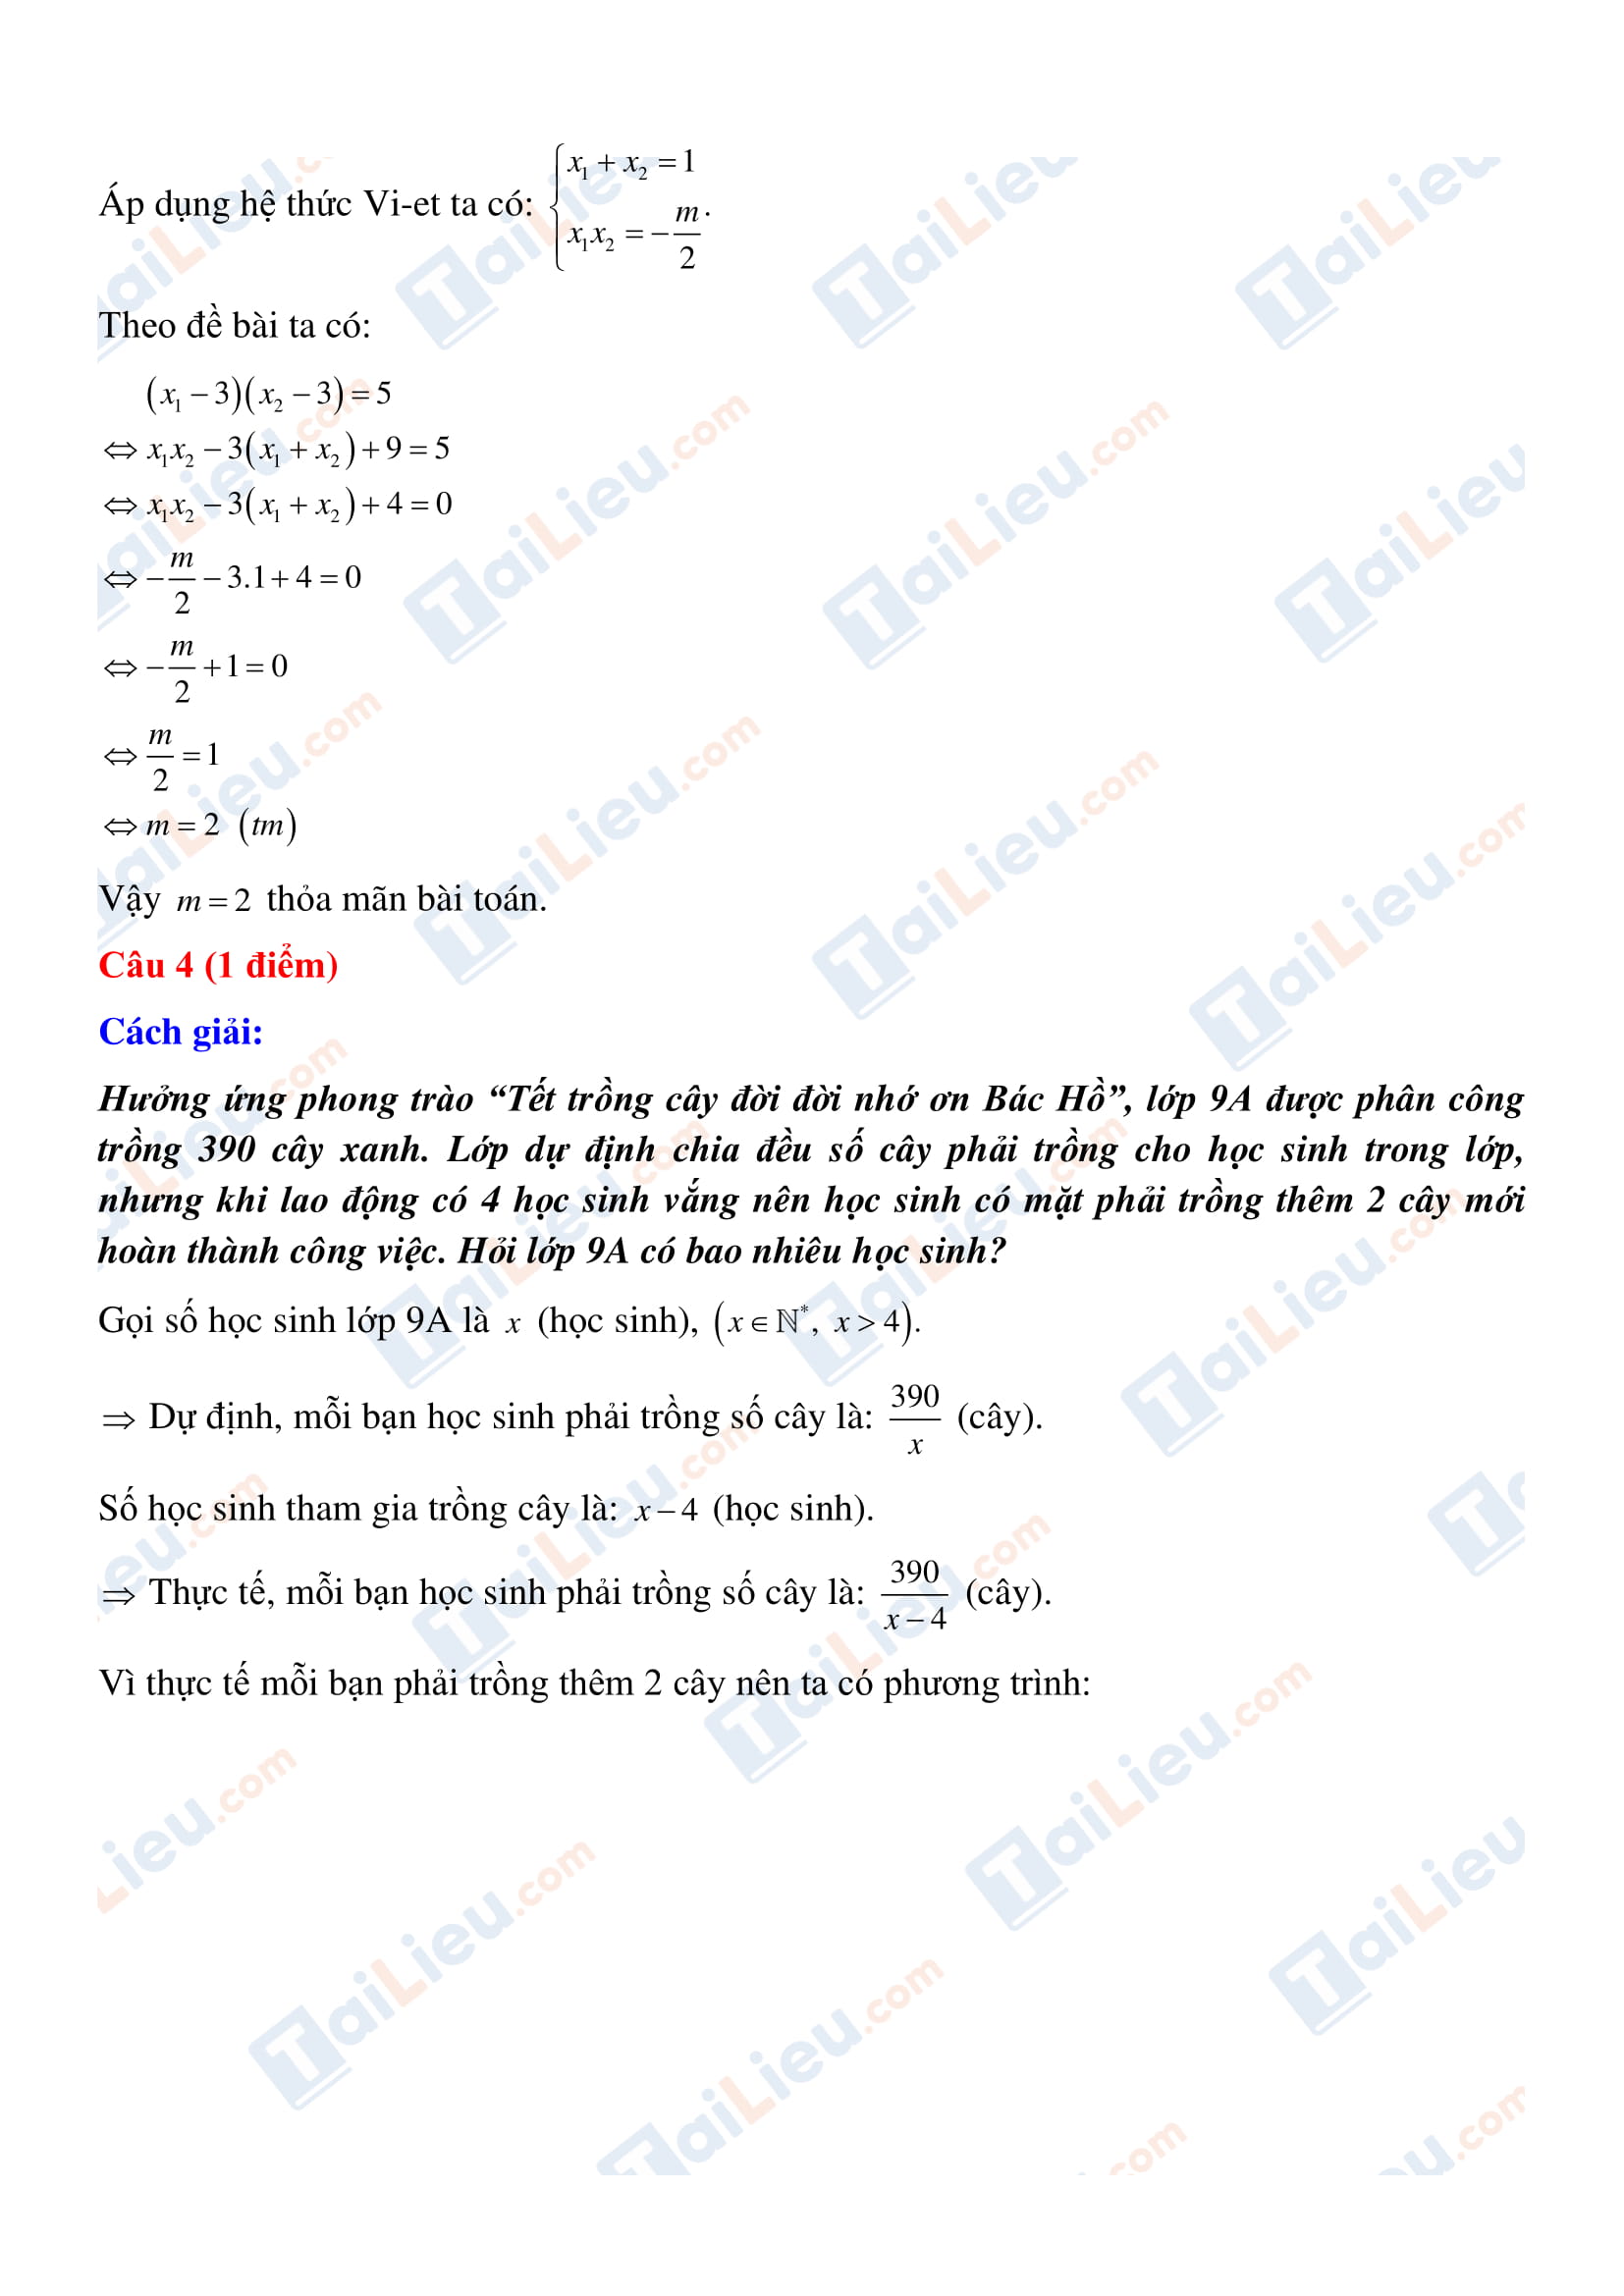 Đáp án môn toán thi vào lớp 10 tỉnh Kon Tum 2020_3